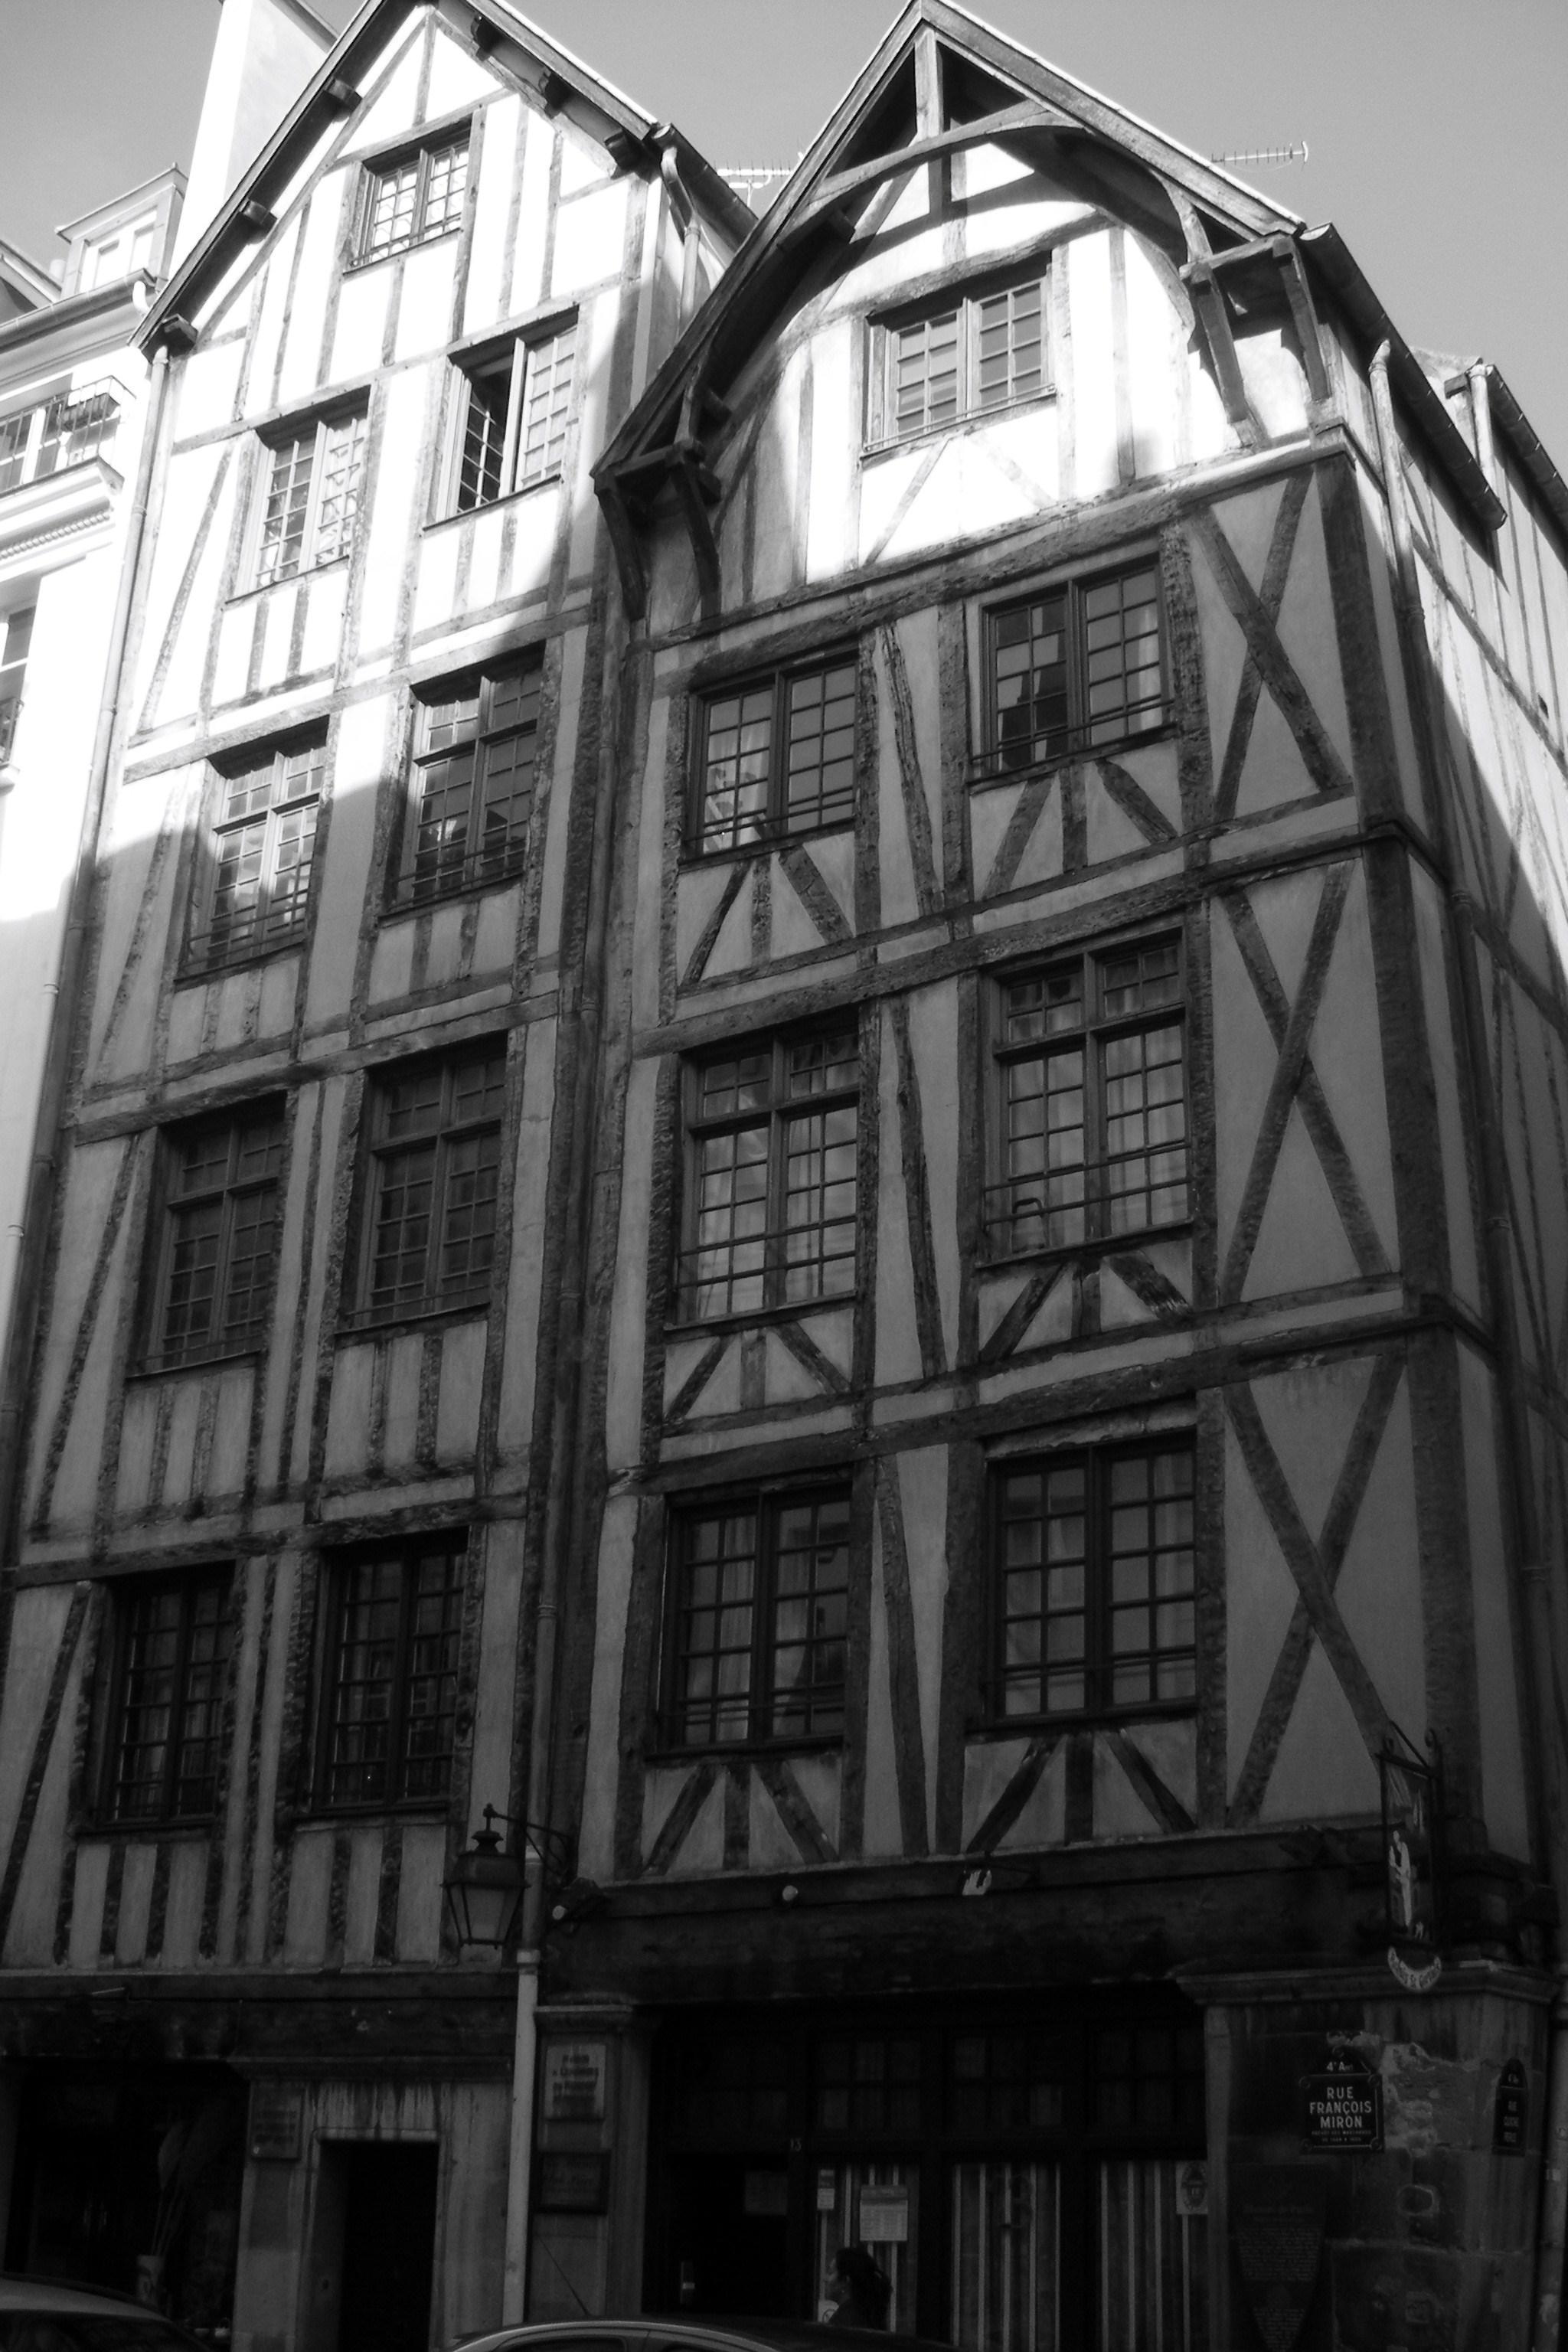 Paris médiéval : les demeures de la rue François Miron